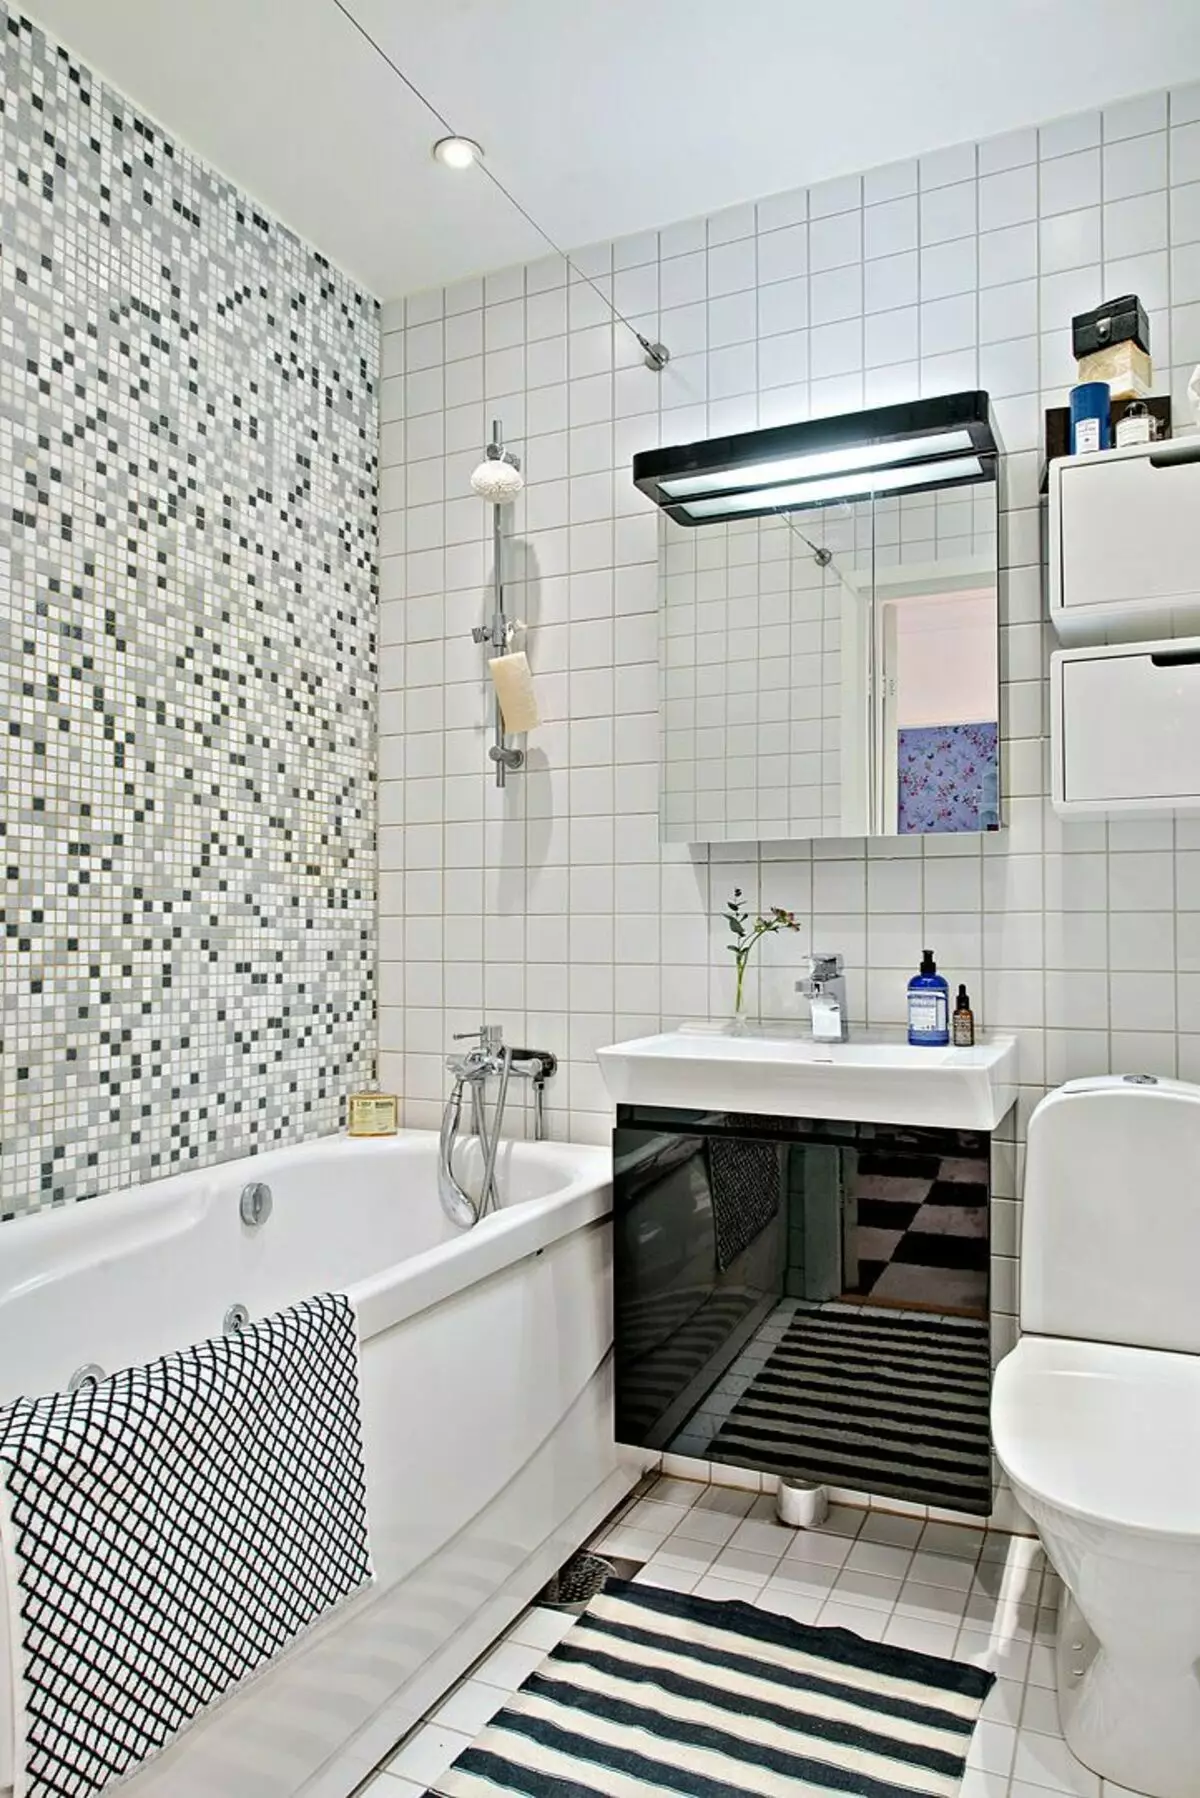 плитка для ванной комнаты маленькой площади